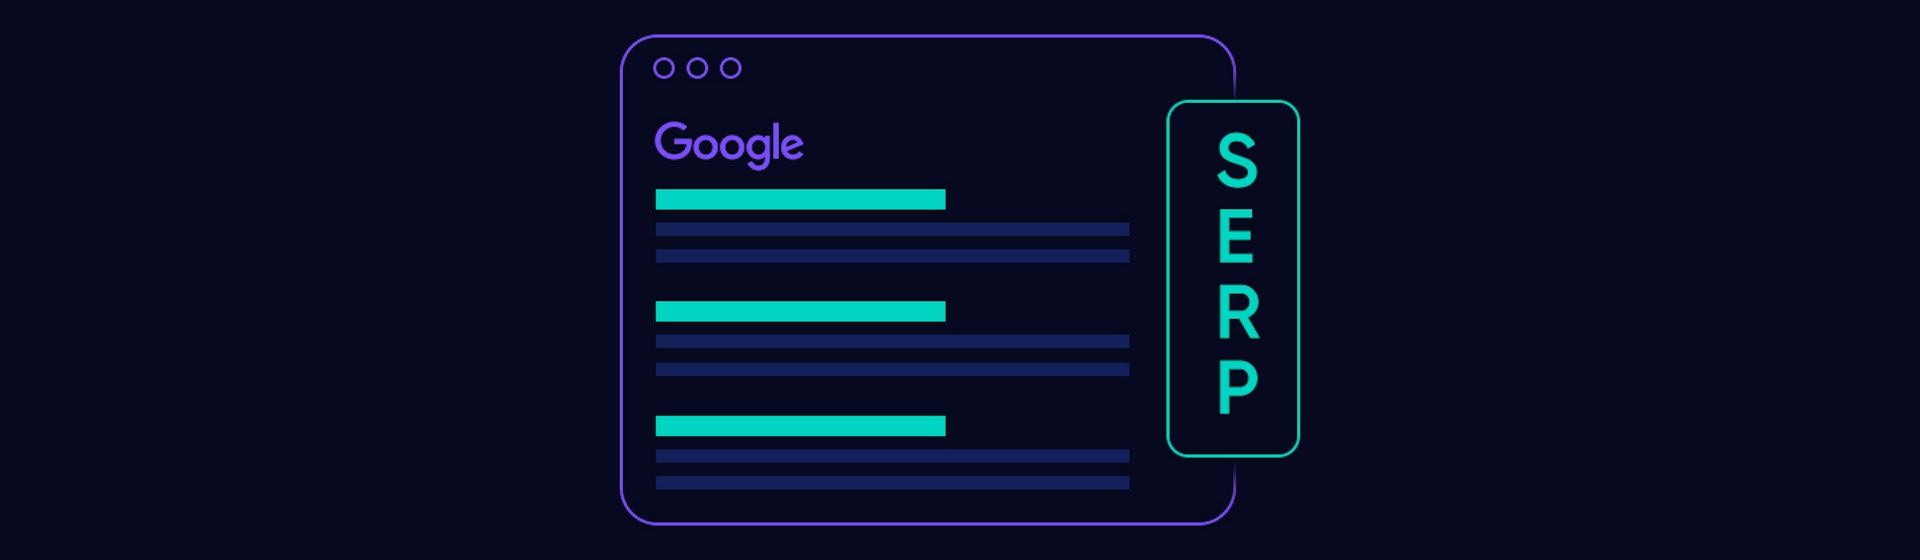 SERPs: Descubre qué son y las funciones de las páginas de resultados de Google